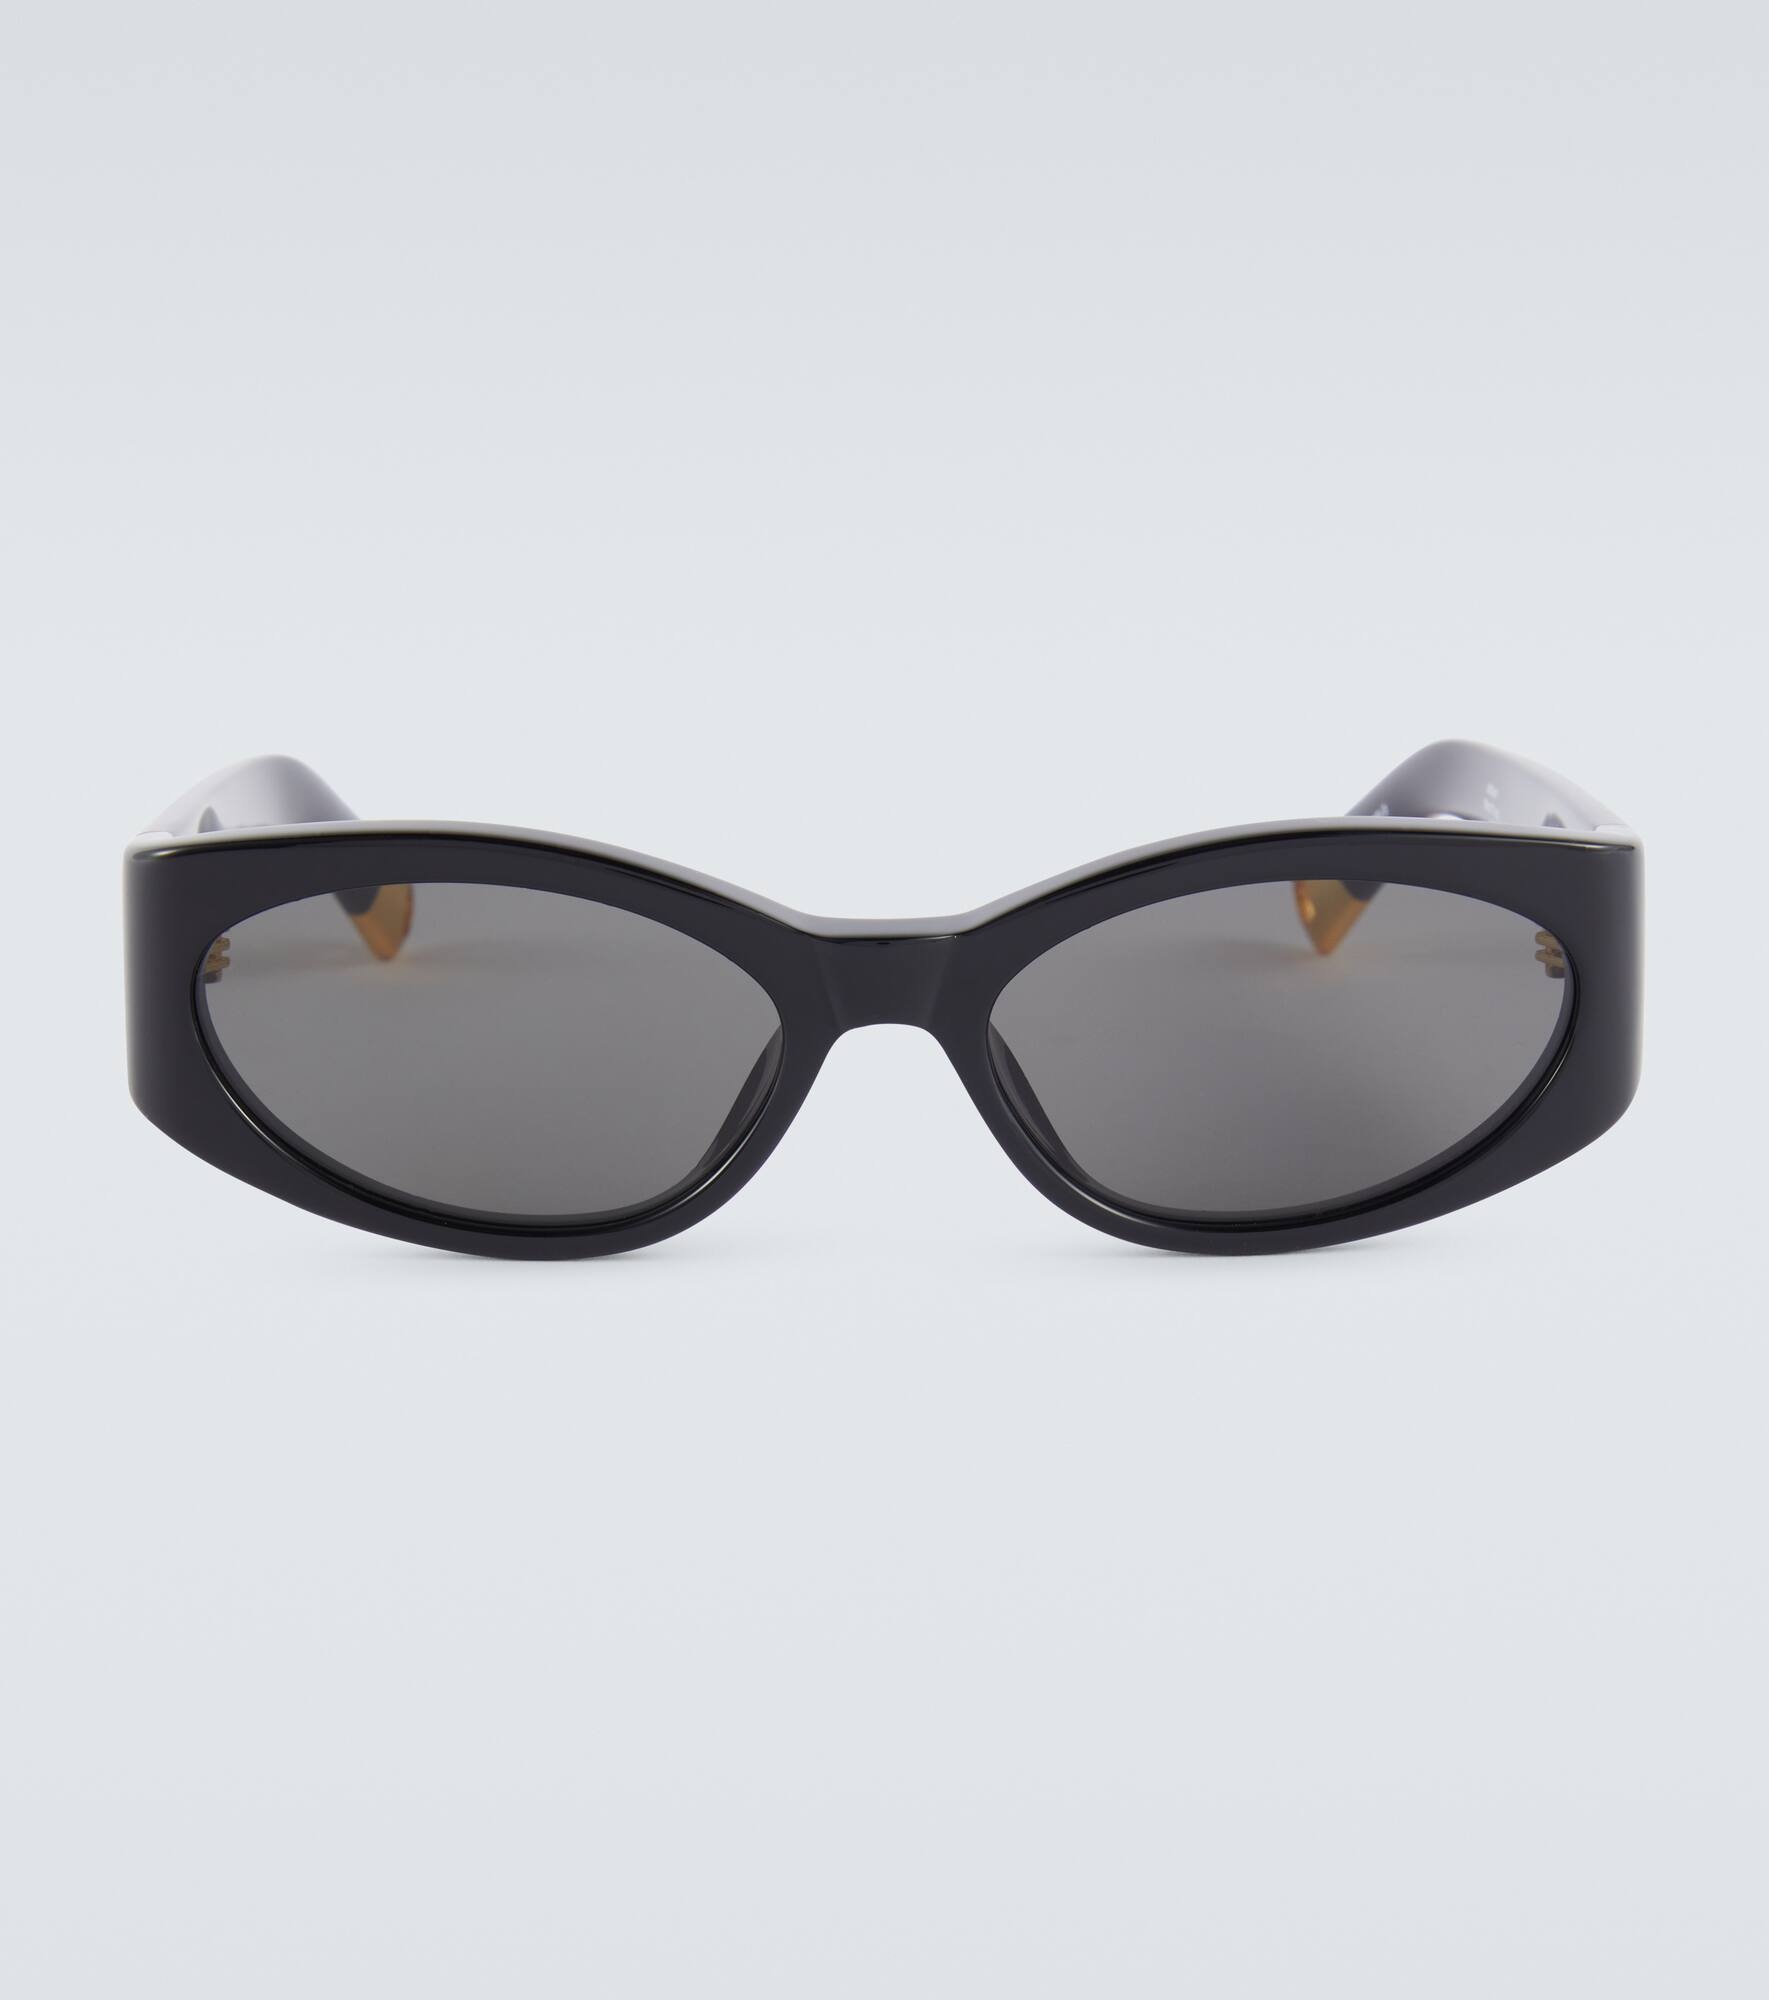 Les Lunettes Ovalo oval sunglasses - 1